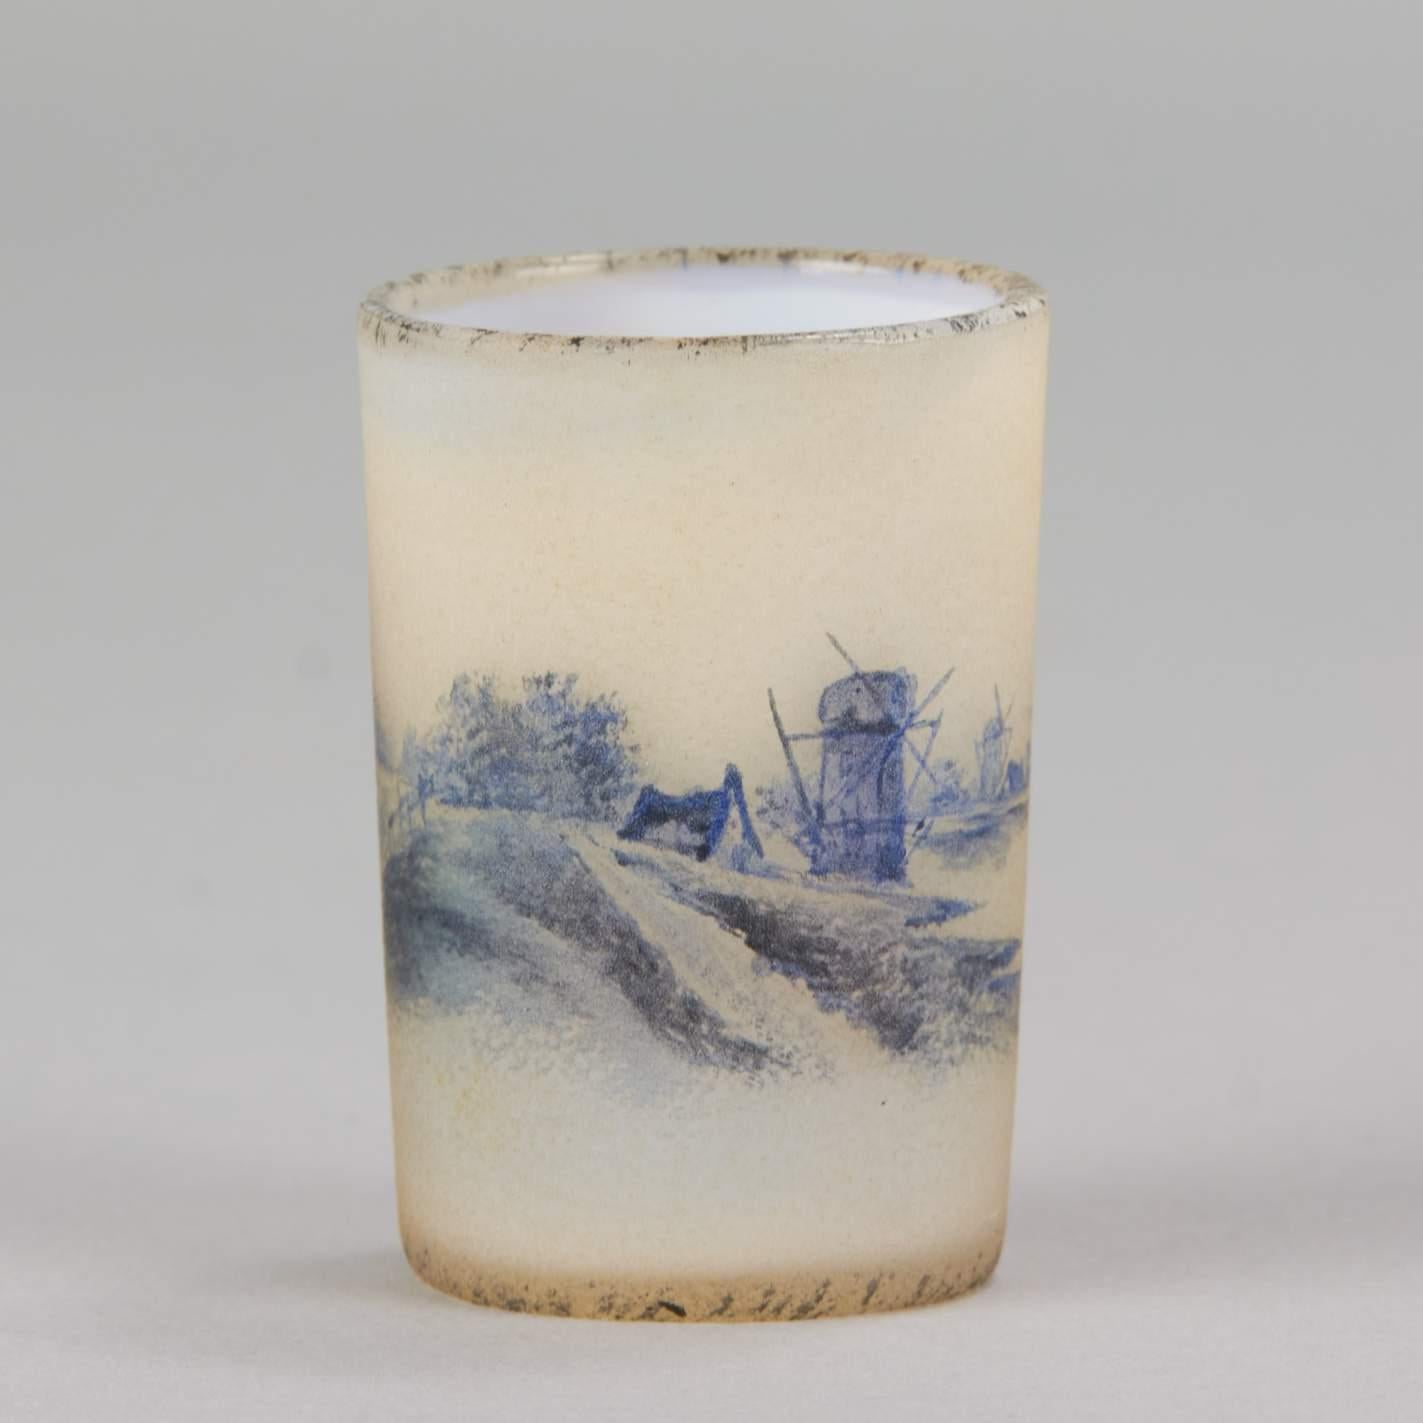 Un joli vase miniature en verre camée décoré de bateaux sur un lac dans un paysage hollandais enneigé avec un moulin à vent sur les rives, la surface présentant de belles couleurs et des détails peints à la main. Signé Daum Nancy et avec la Croix de